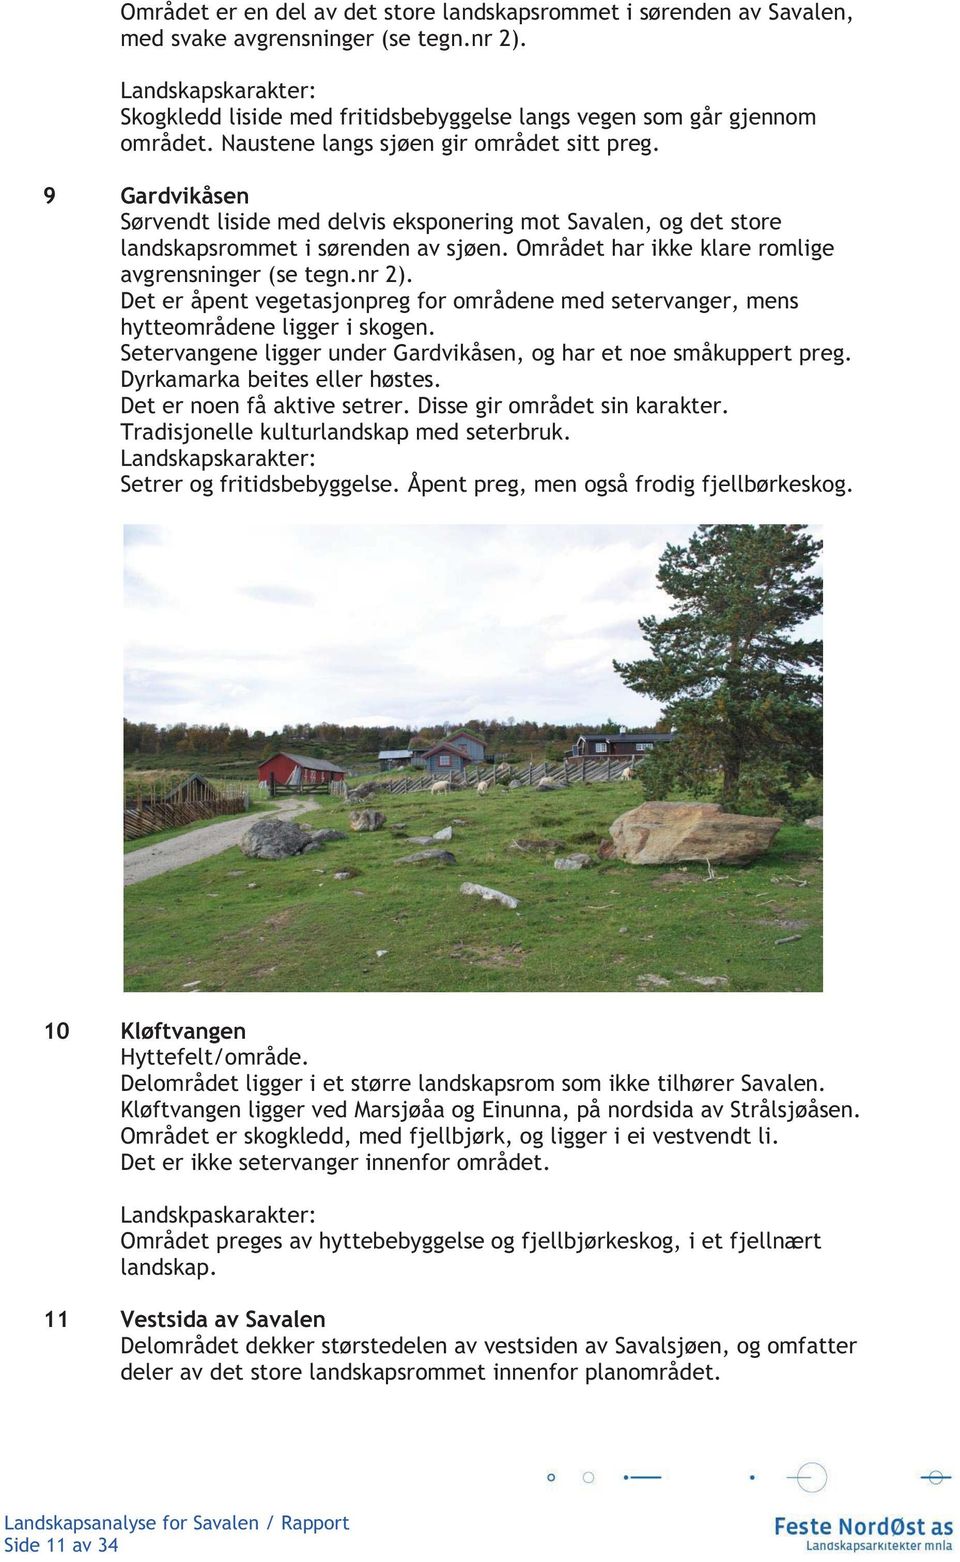 9 Gardvikåsen Sørvendt liside med delvis eksponering mot Savalen, og det store landskapsrommet i sørenden av sjøen. Området har ikke klare romlige avgrensninger (se tegn.nr 2).